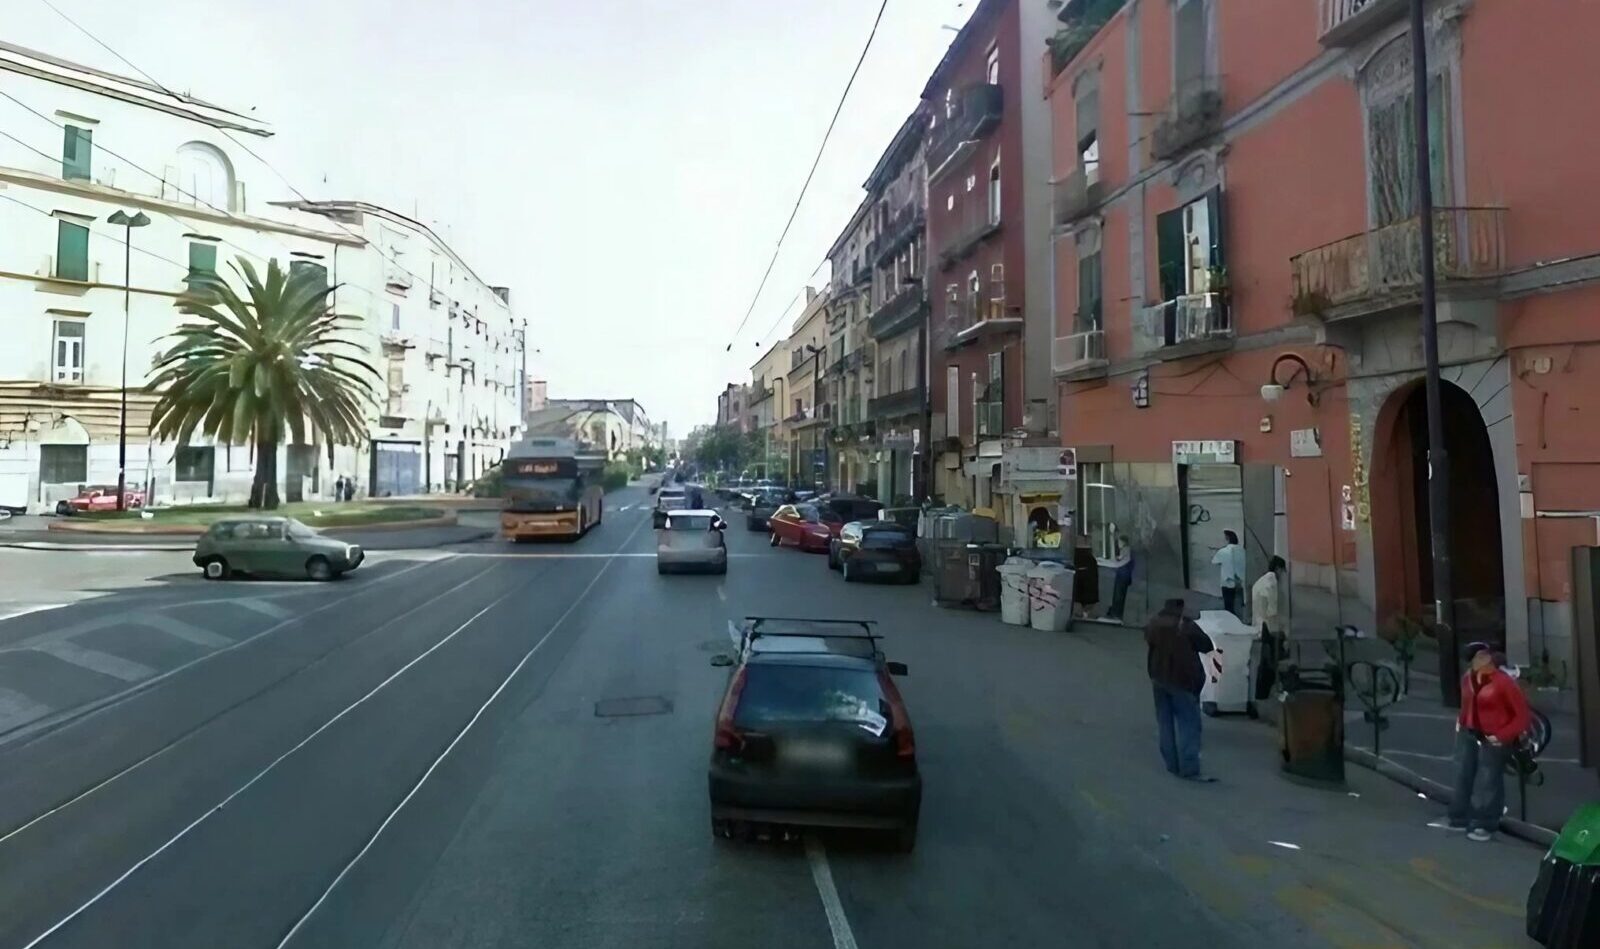 Corso San Giovanni in Teduccio